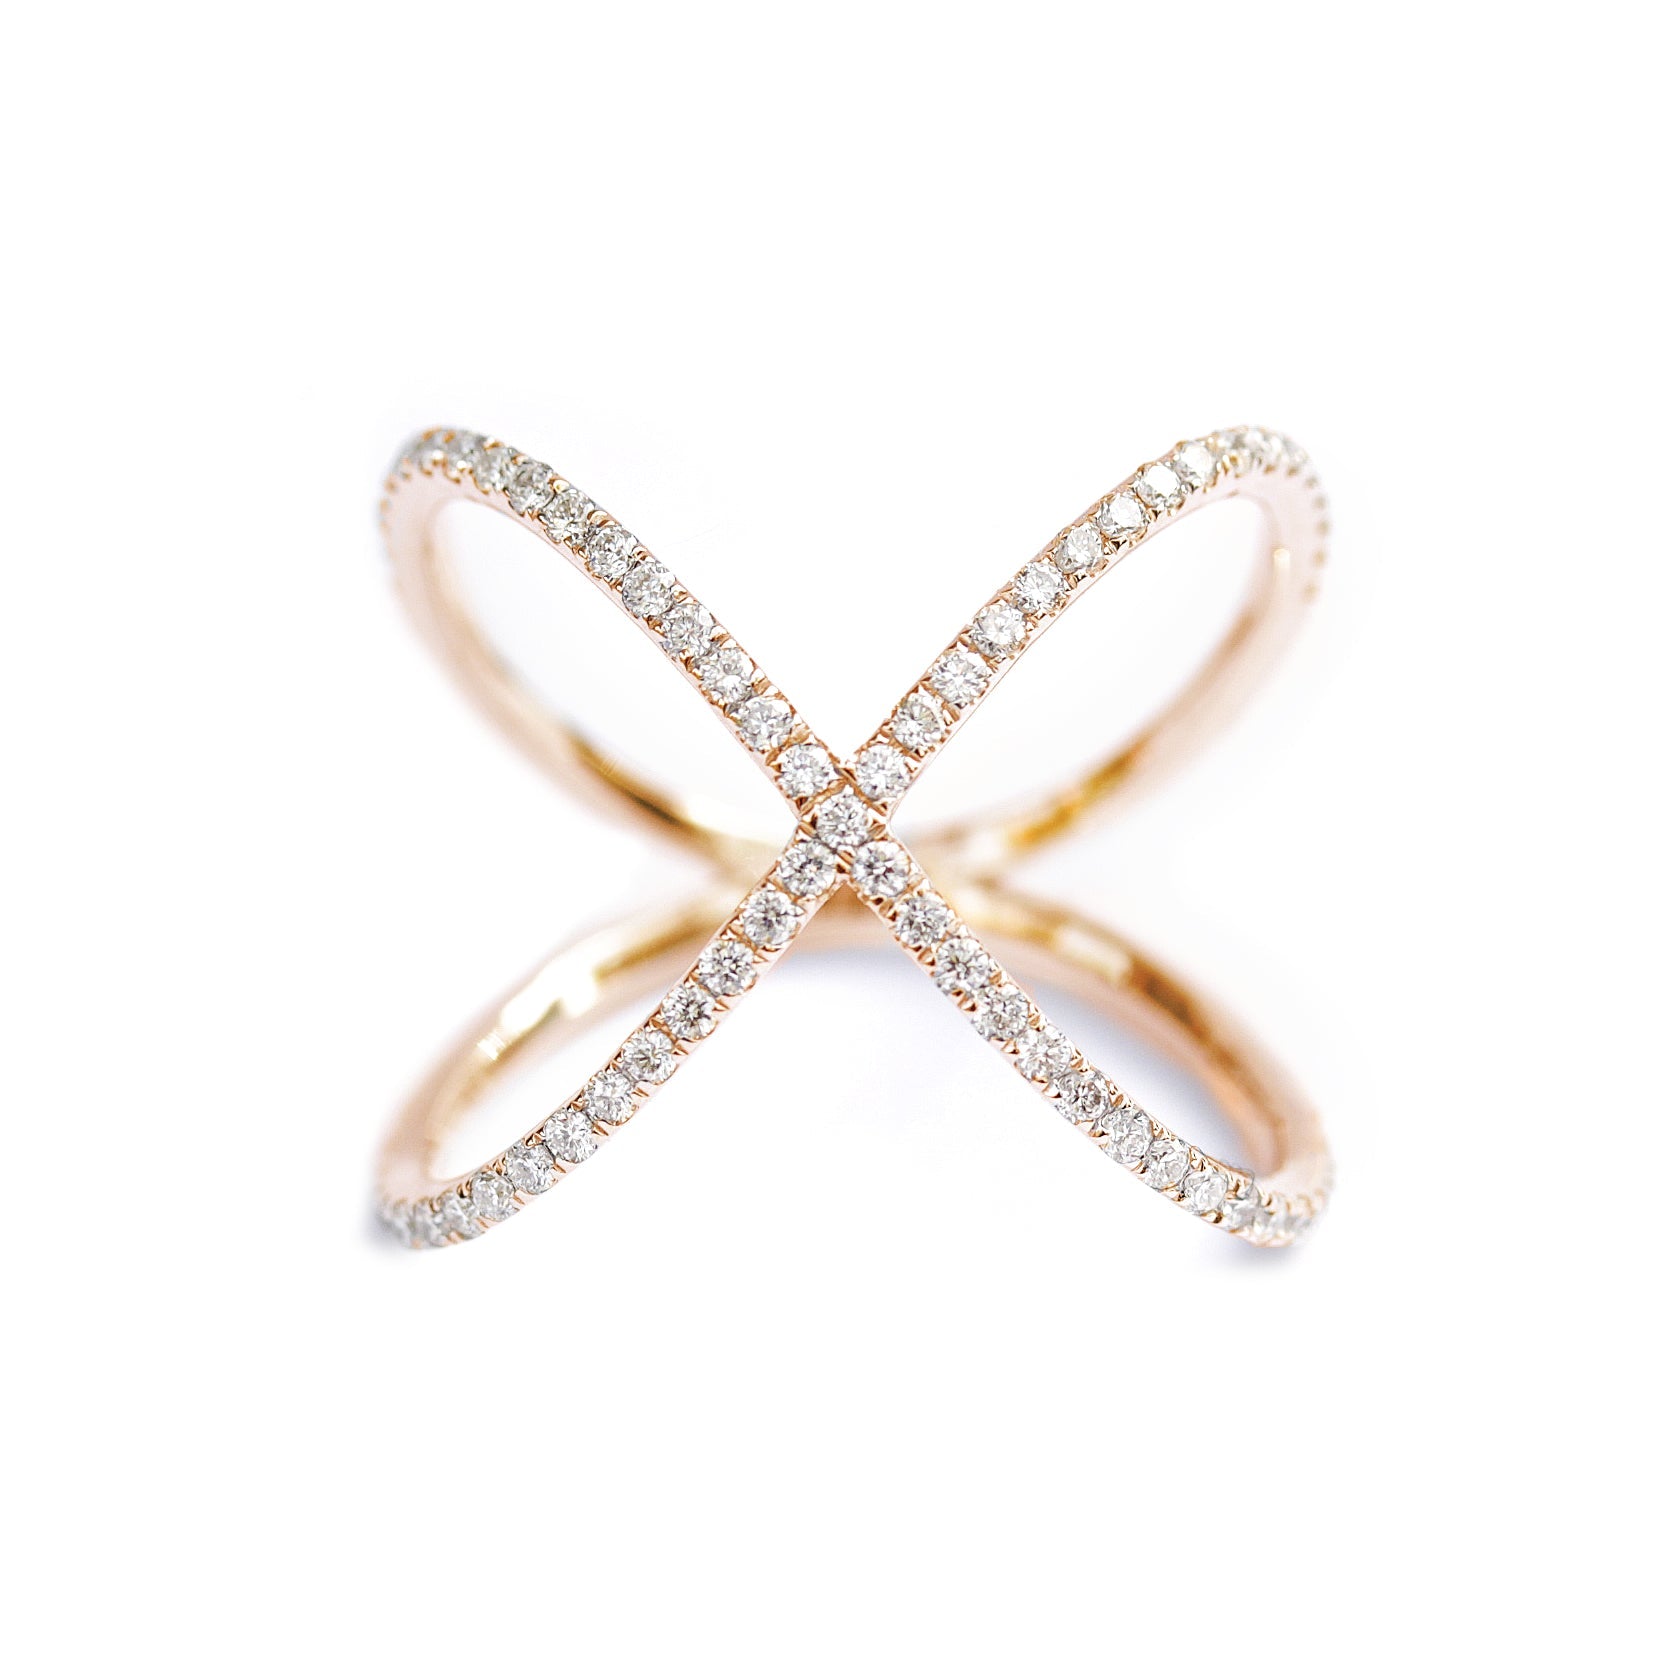 Diamond Elegant Wide X-Ring, 14K, White Gold, Size 7.75 - READY TO SHIP!